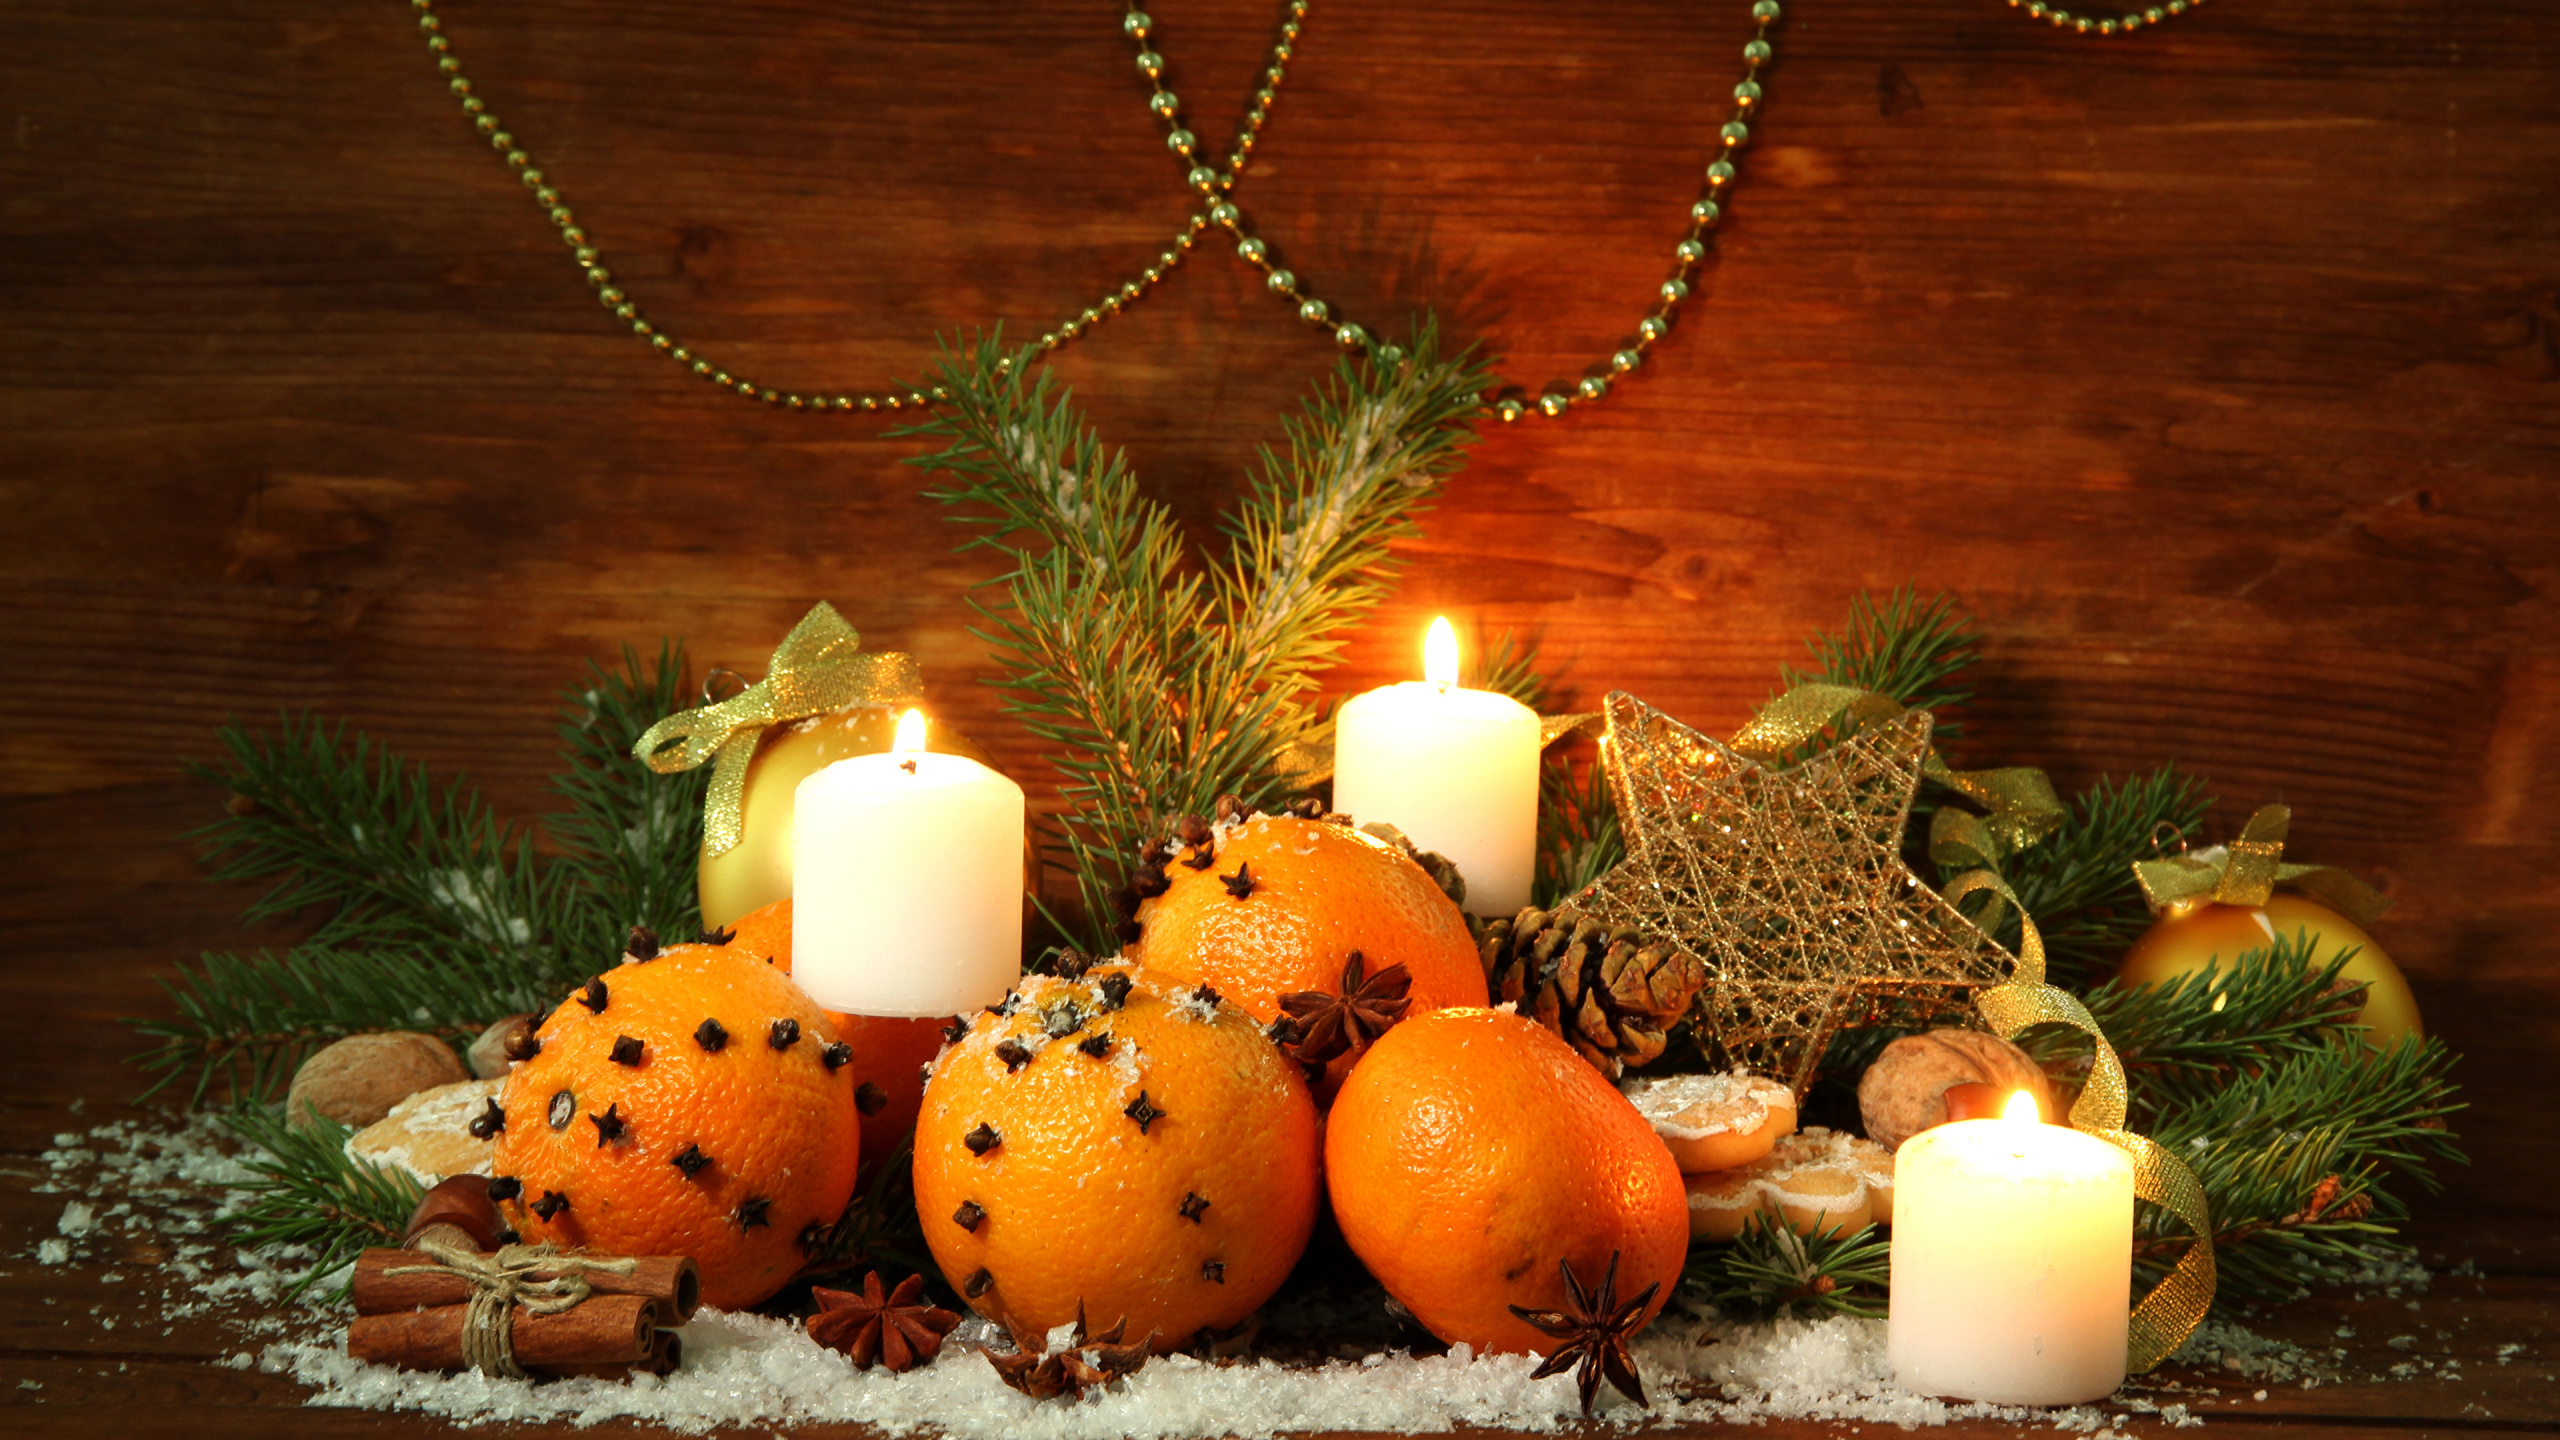 Weihnachten, Stilleben, Kürbis, Kerze, Christmas Ornament. Wallpaper in 2560x1440 Resolution